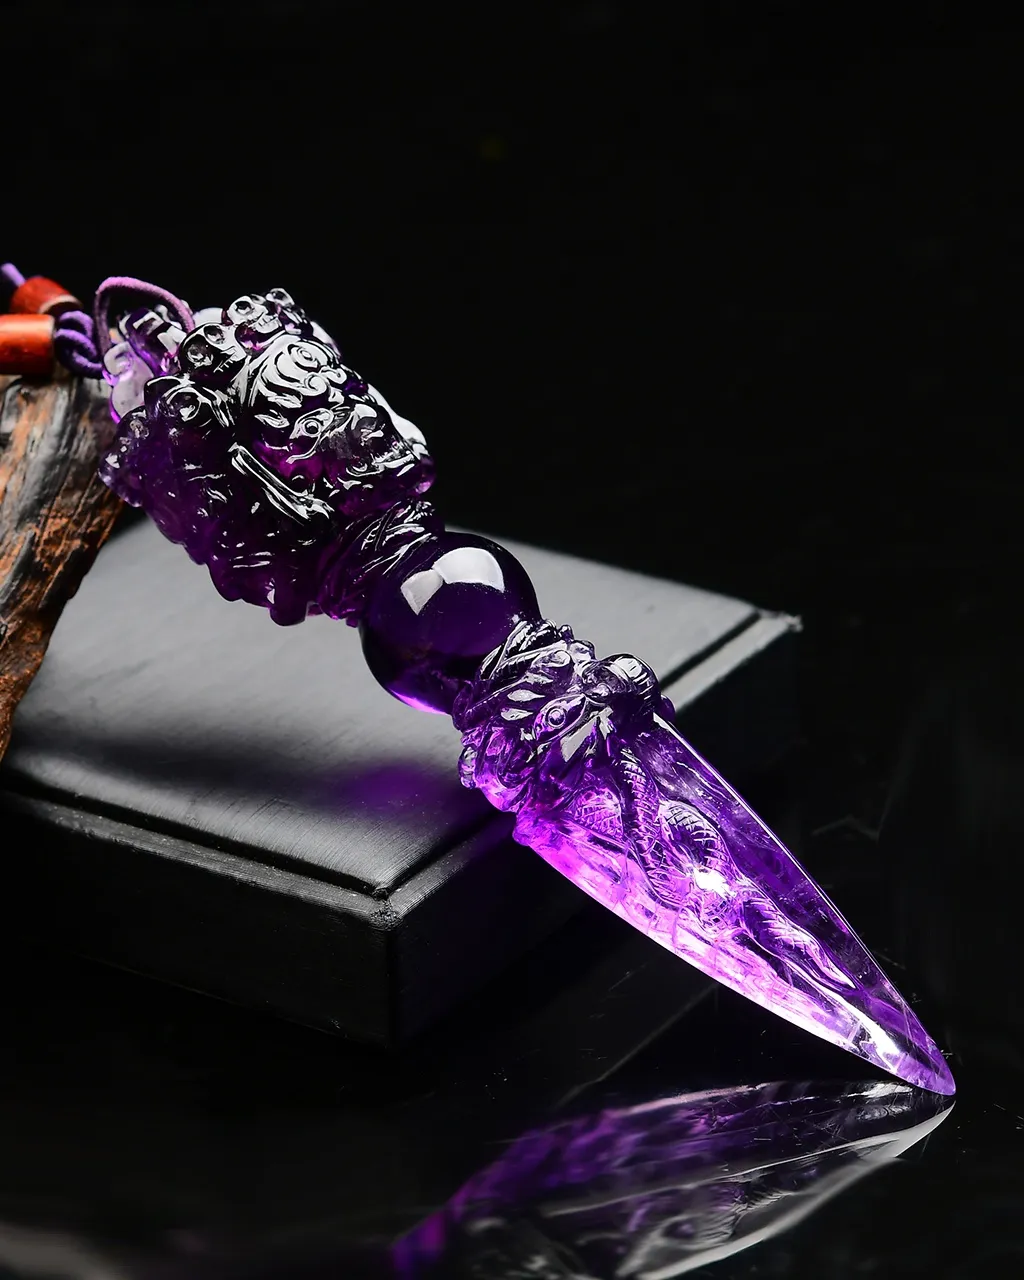 天然紫水晶金刚橛•金刚杵车挂，佩戴者顺顺利利保平安，大师雕刻，难度高，遇见请珍惜，实物非常漂亮 规格:133*31*31mm，重130g